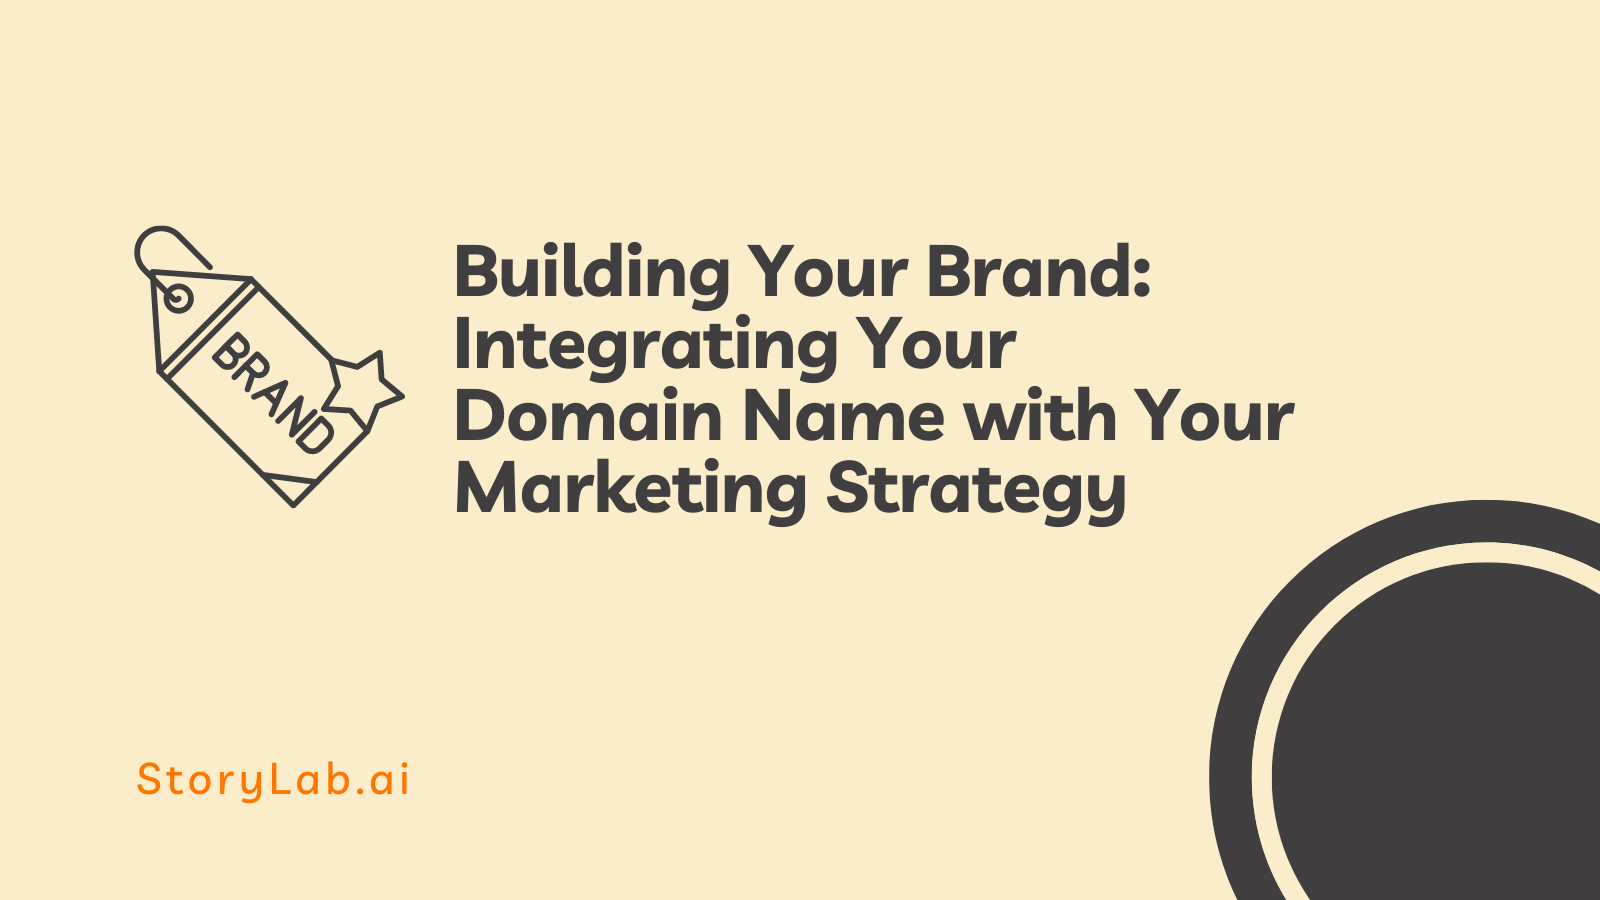 Construyendo su marca Integrando su nombre de dominio con su estrategia de marketing